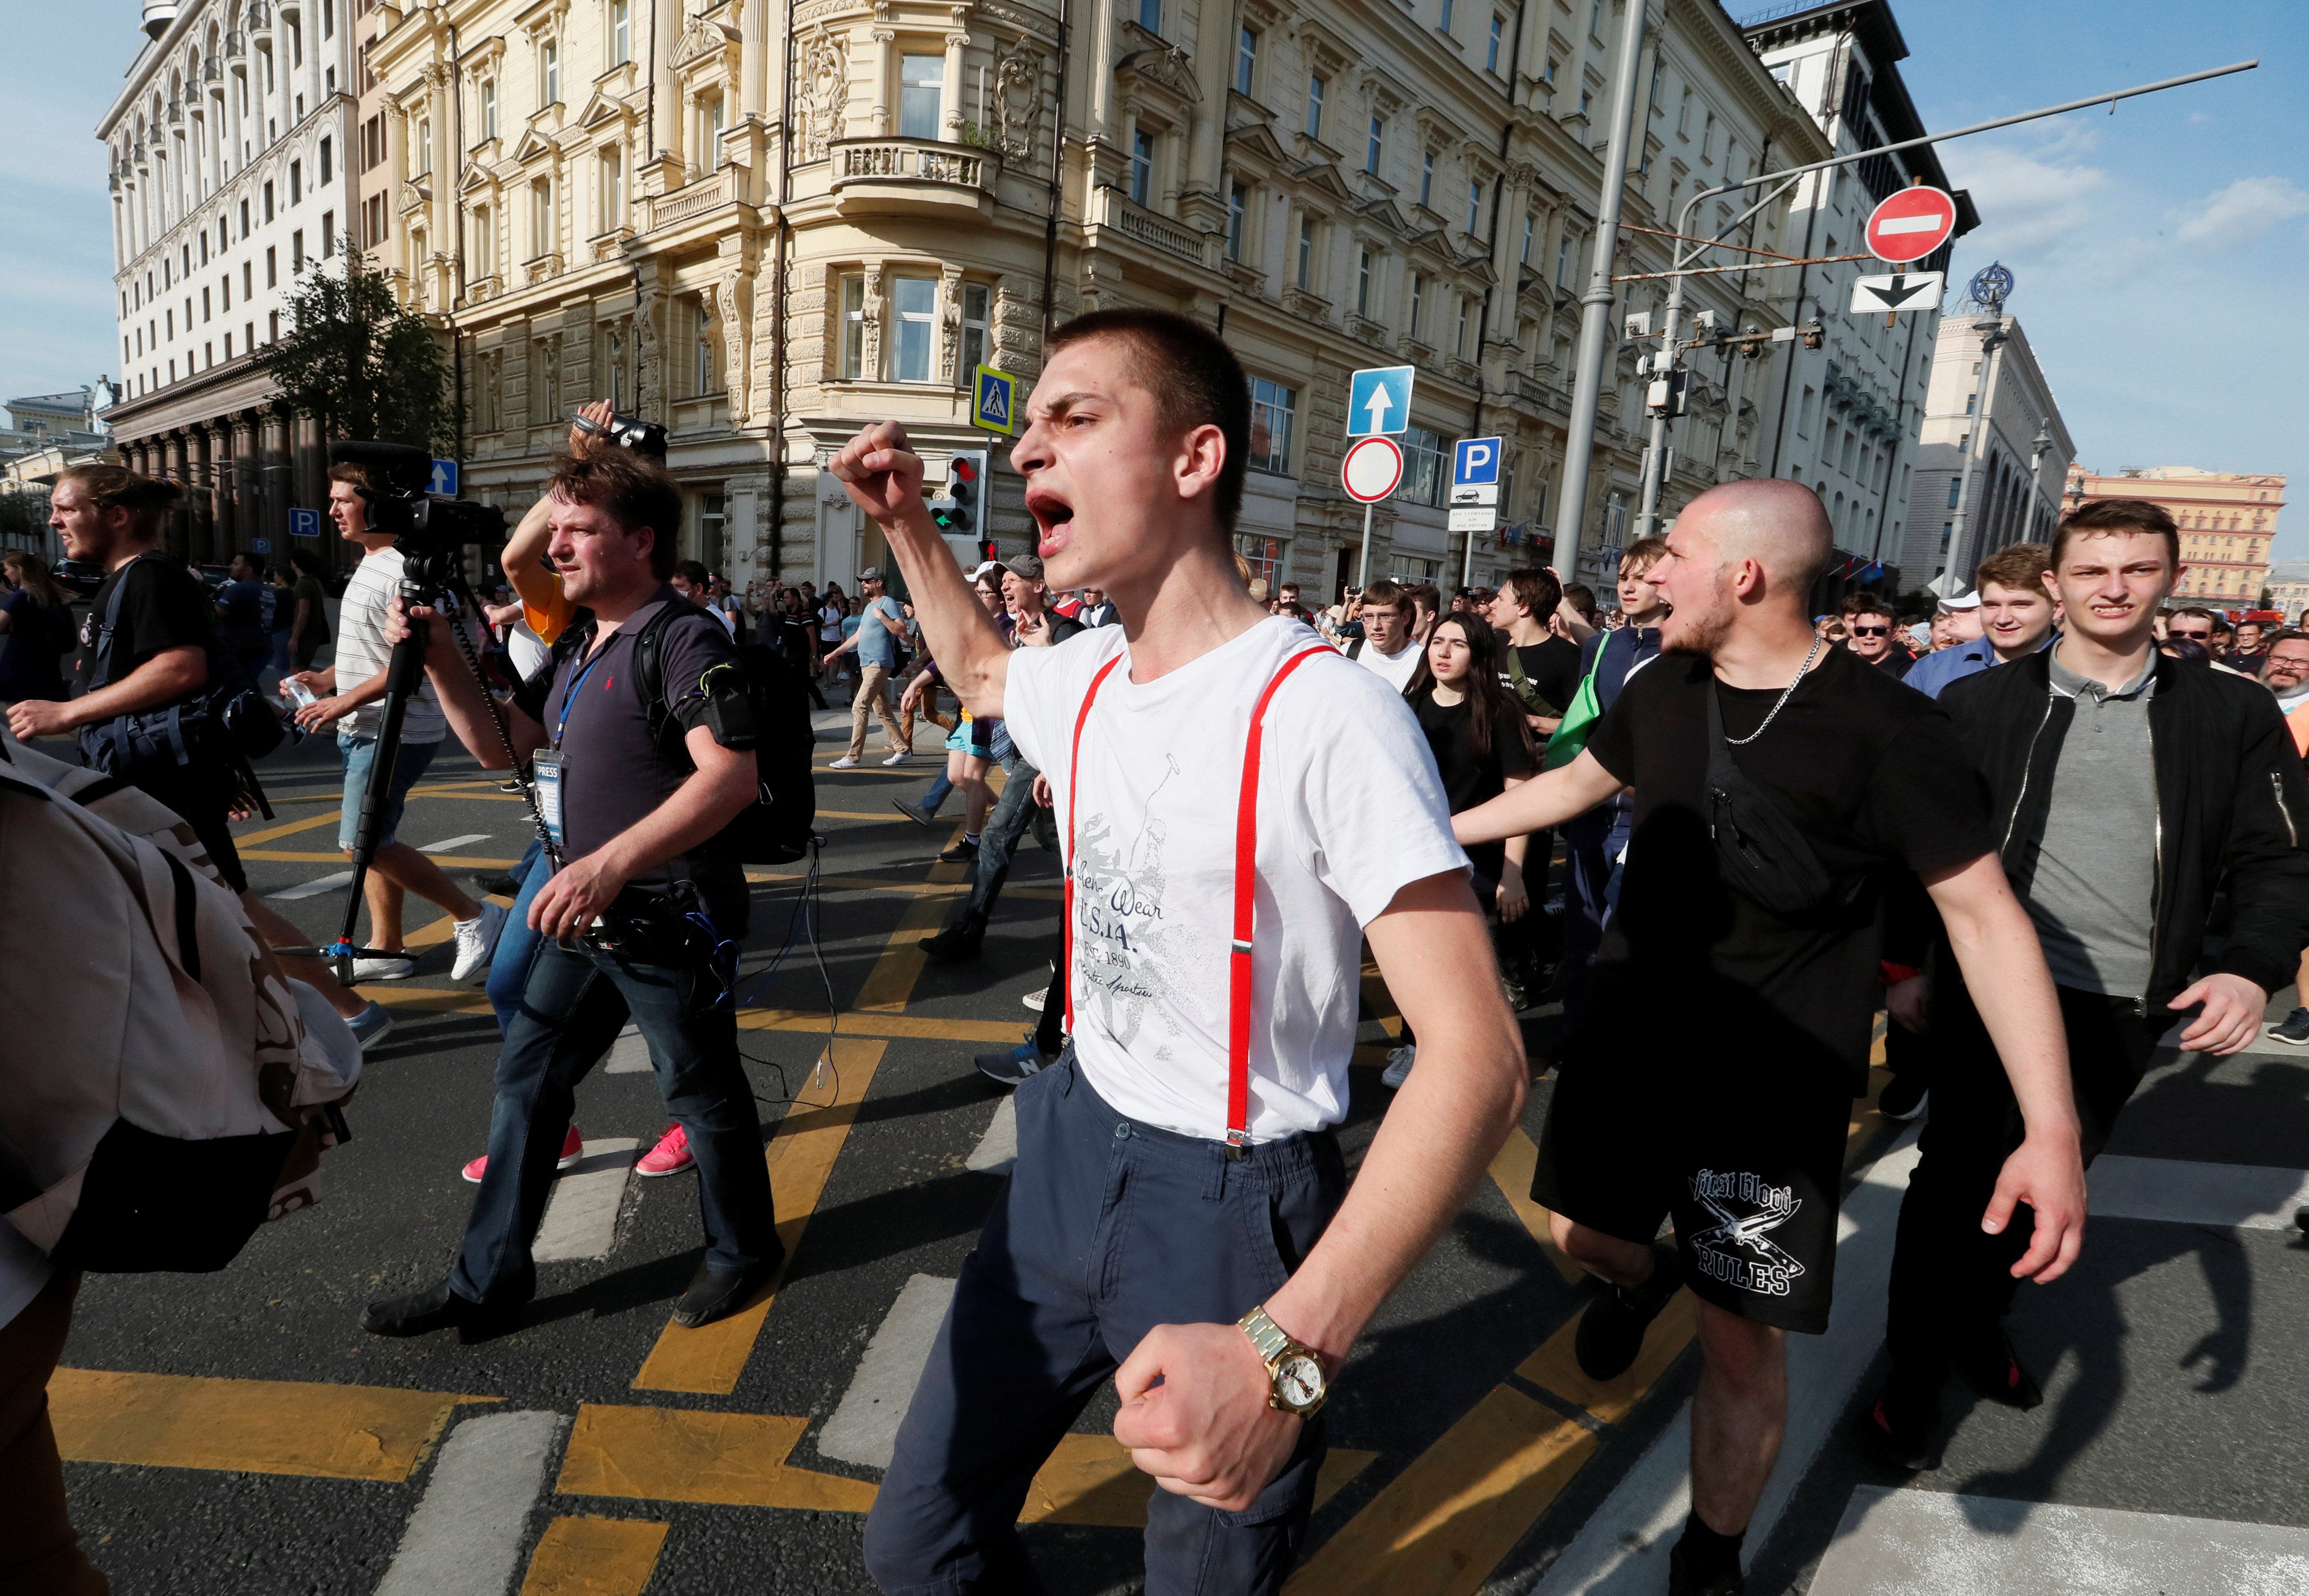 Новости дня сегодня в москве видео. Молодежь на митинге. Молодежные протесты. Последние события в Москве. Демонстрация молодежи в Москве.